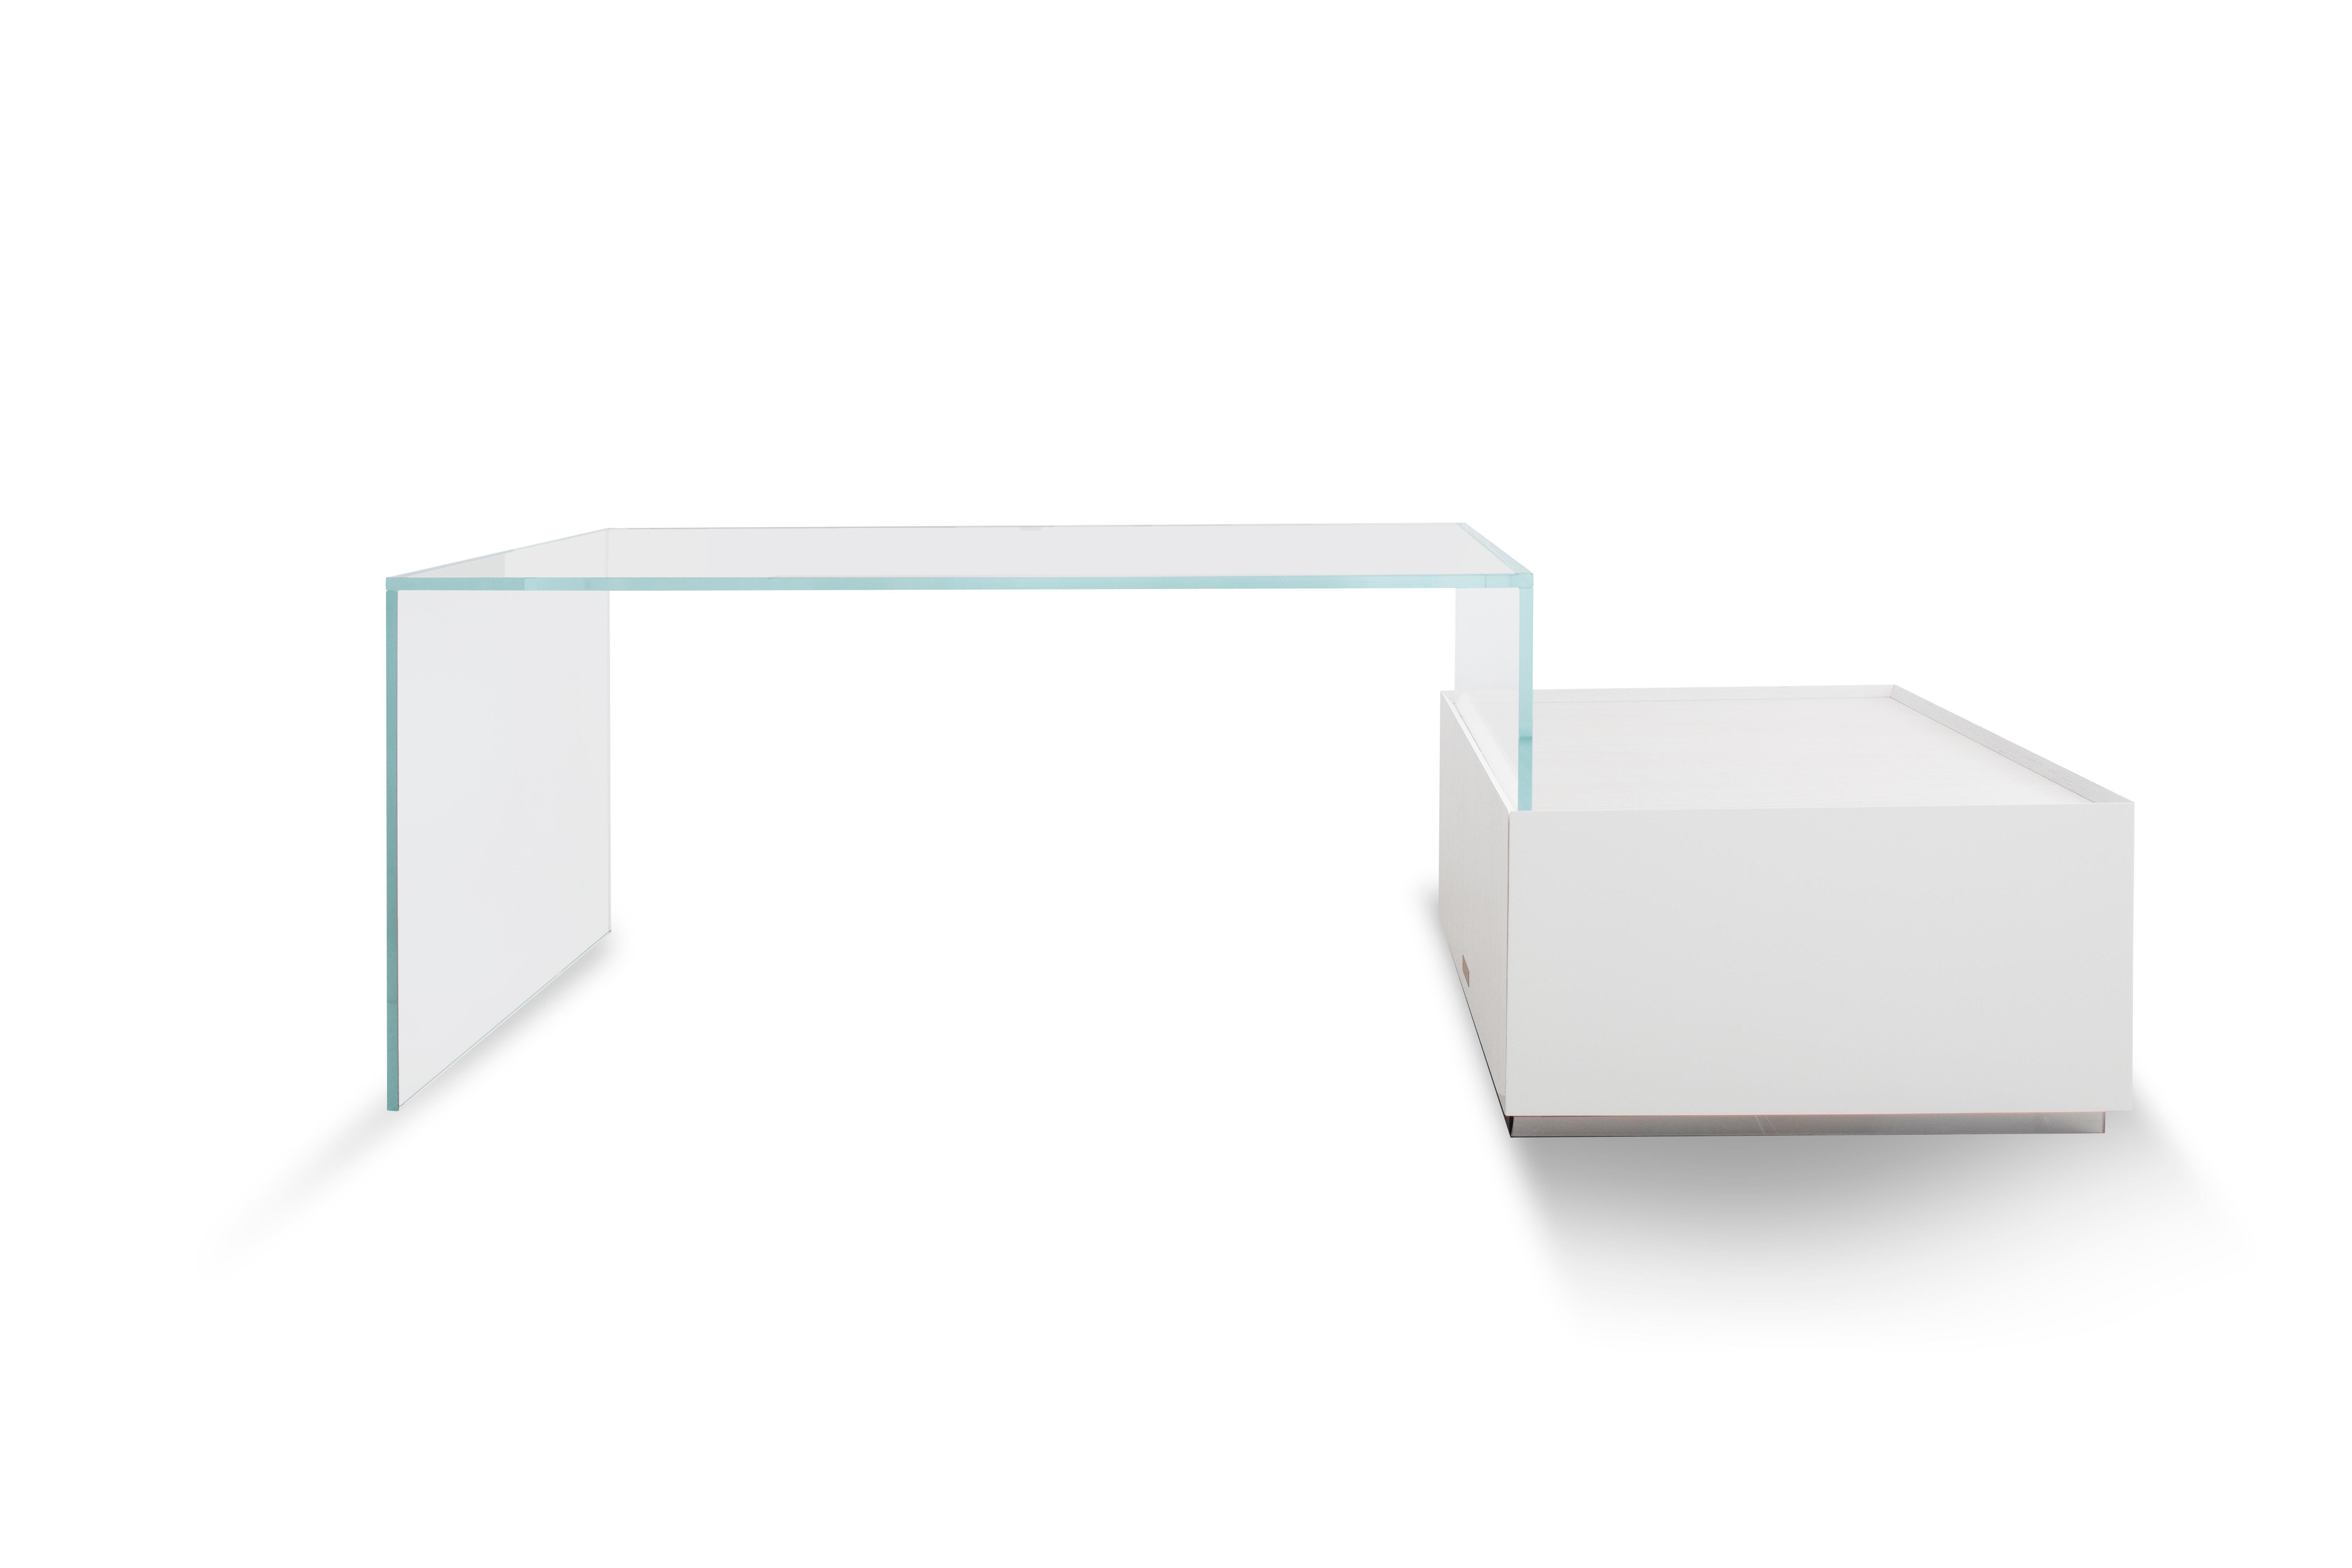 Sky Bridge ist ein Glastisch mit einem reinen multifunktionalen Stauraum in Weißeiche für den modernen digitalen Nomaden - sauber, leicht und funktionell.
 
Wie abgebildet Holz: Weiße Milcheiche Glas: Klarglas.

Handgefertigt in Italien.